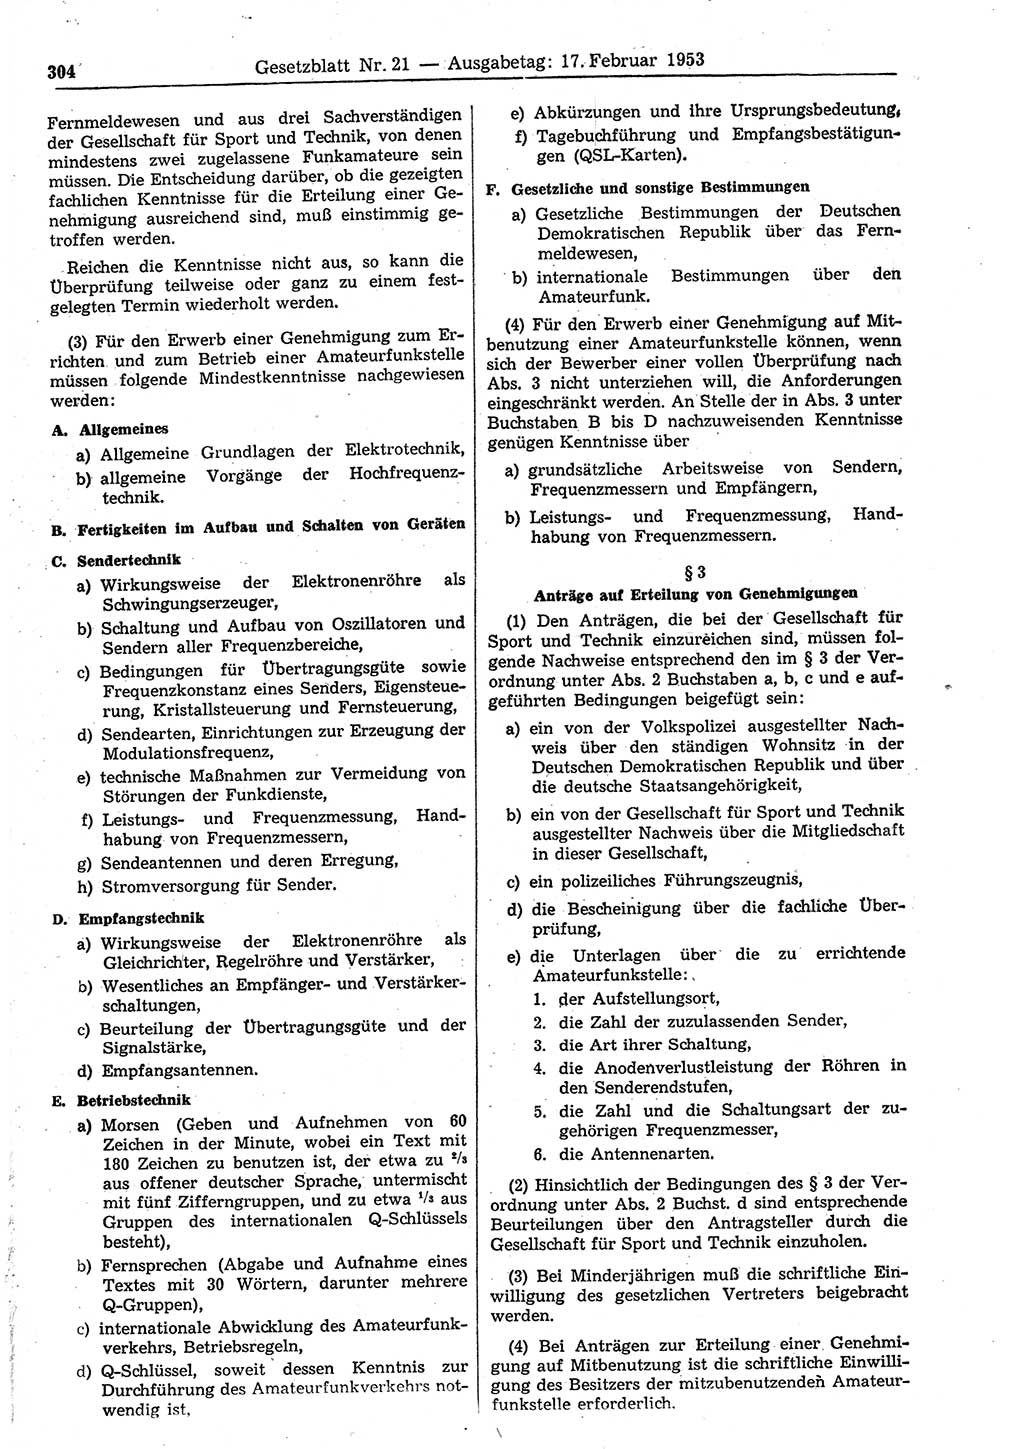 Gesetzblatt (GBl.) der Deutschen Demokratischen Republik (DDR) 1953, Seite 304 (GBl. DDR 1953, S. 304)